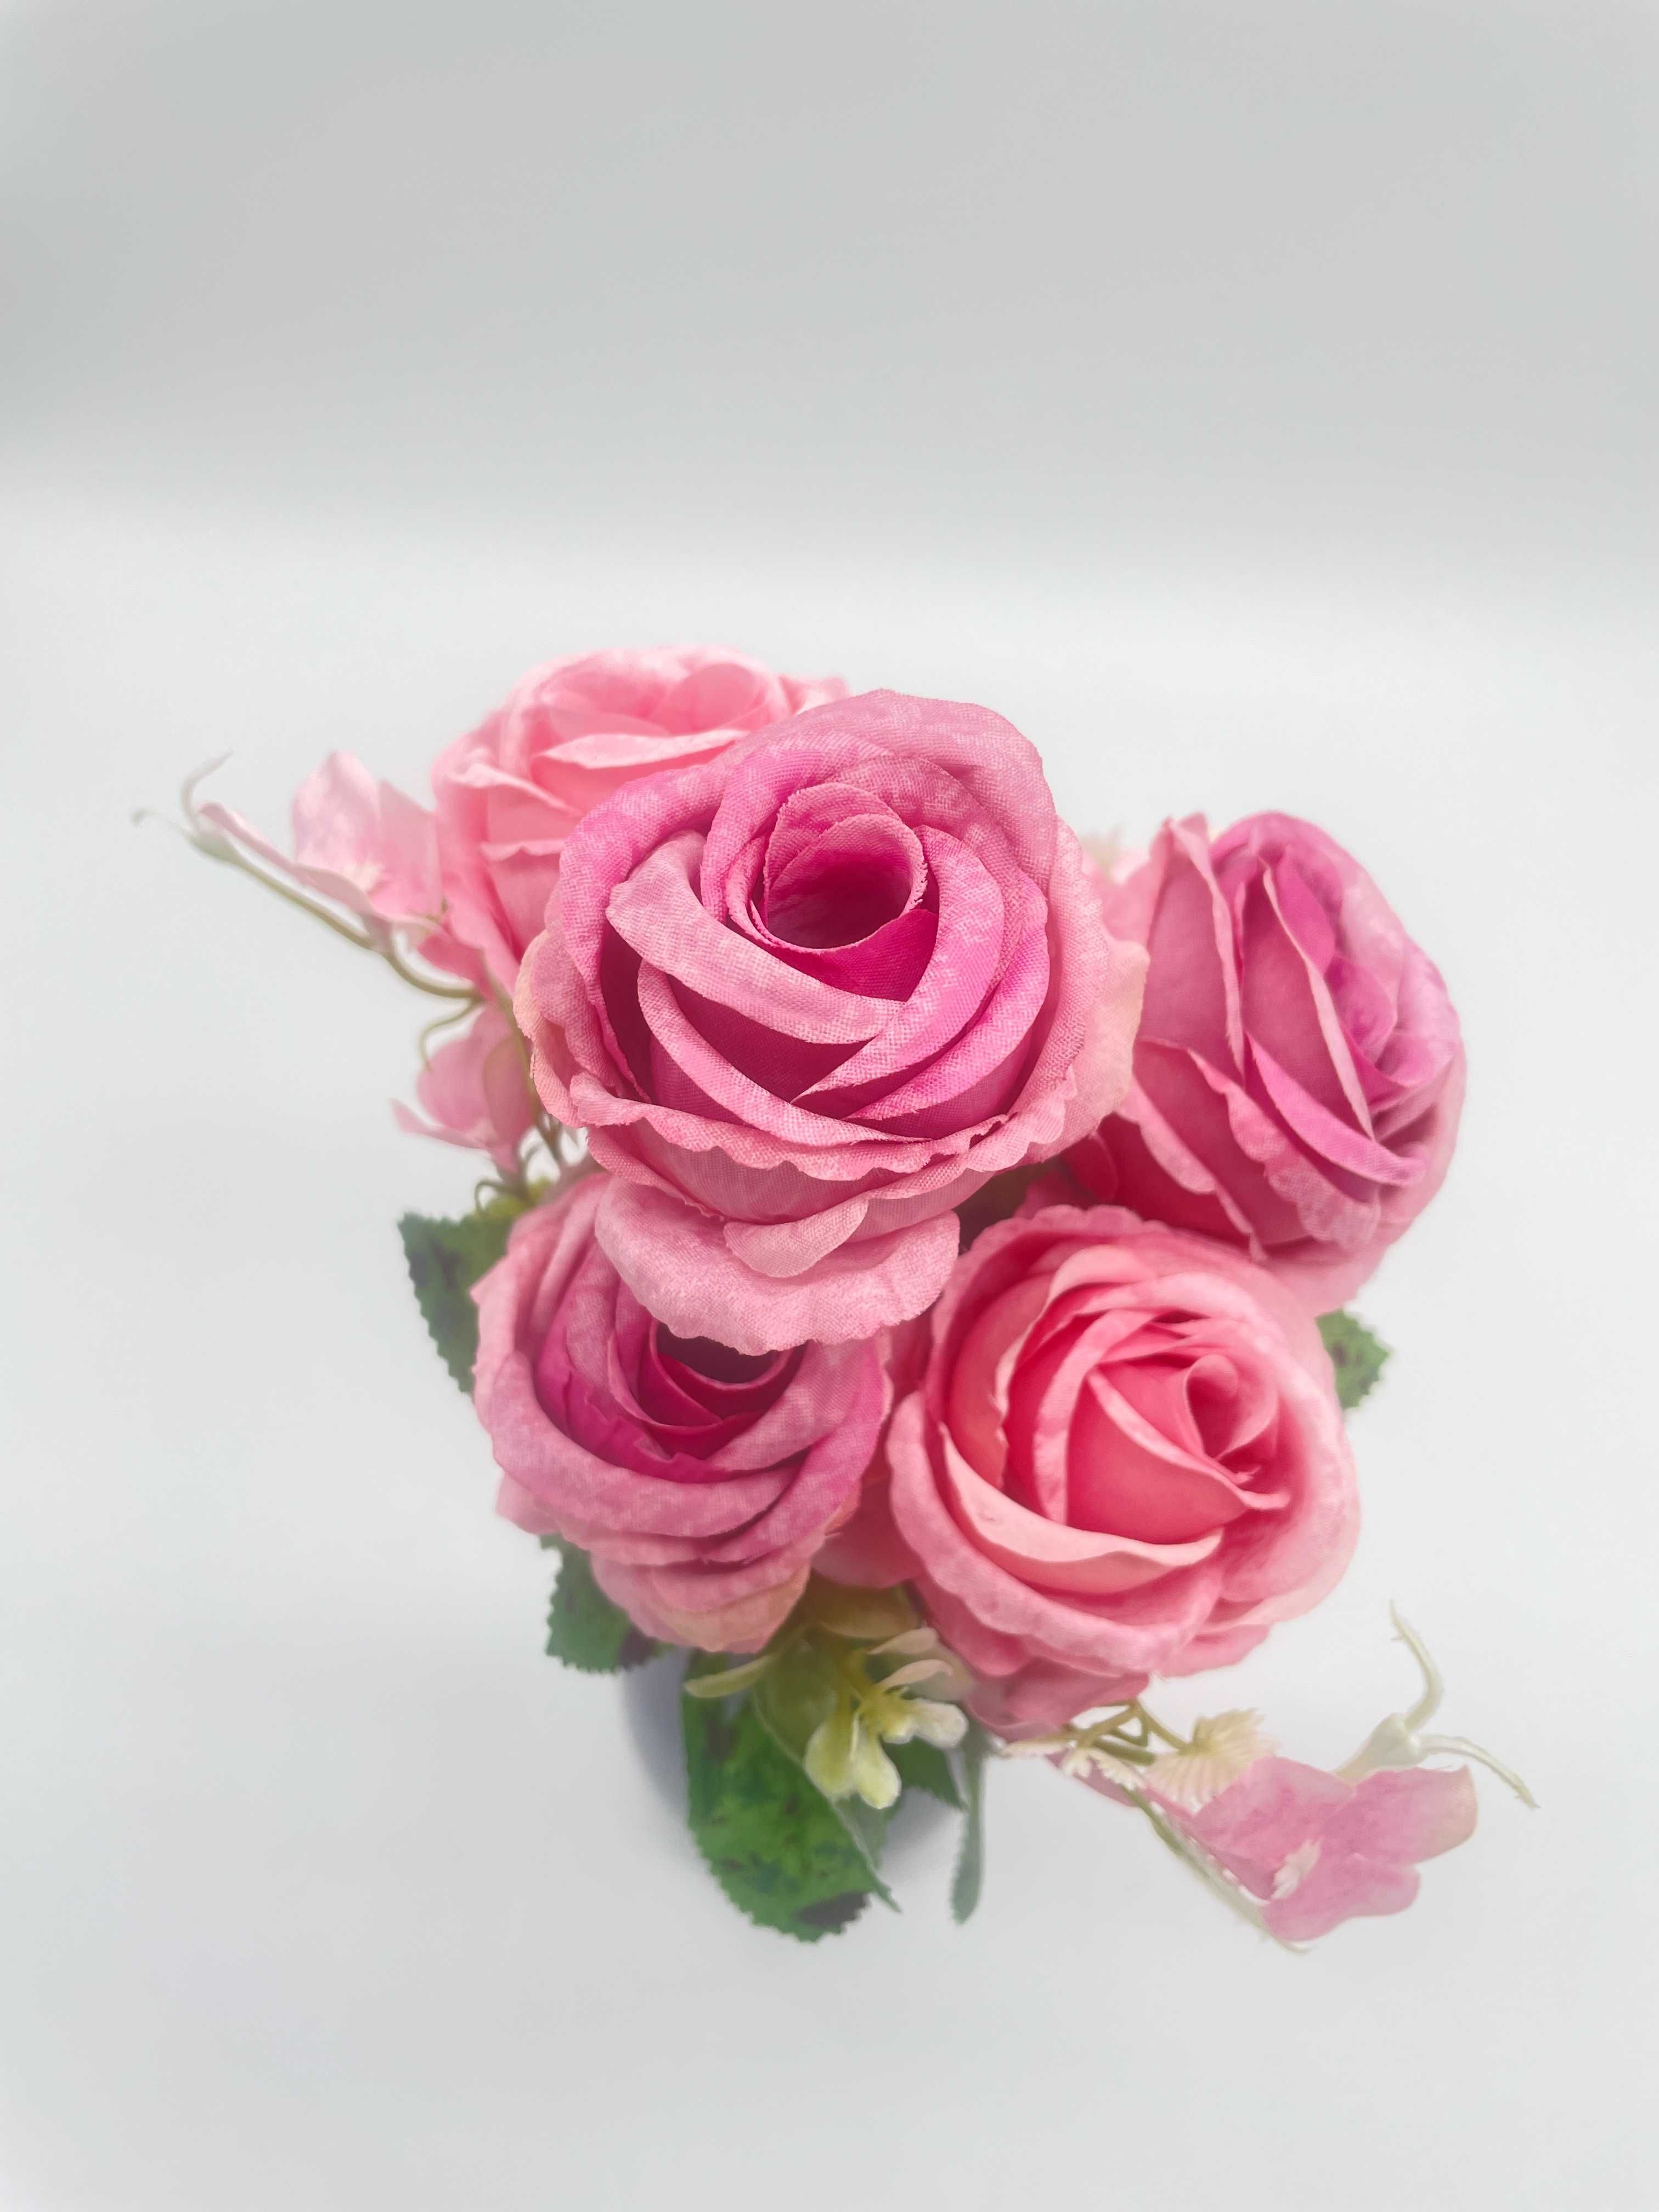 Bukiet Kwiatów Róży Różowy Wazon 29 cm Kwiaty Sztuczne